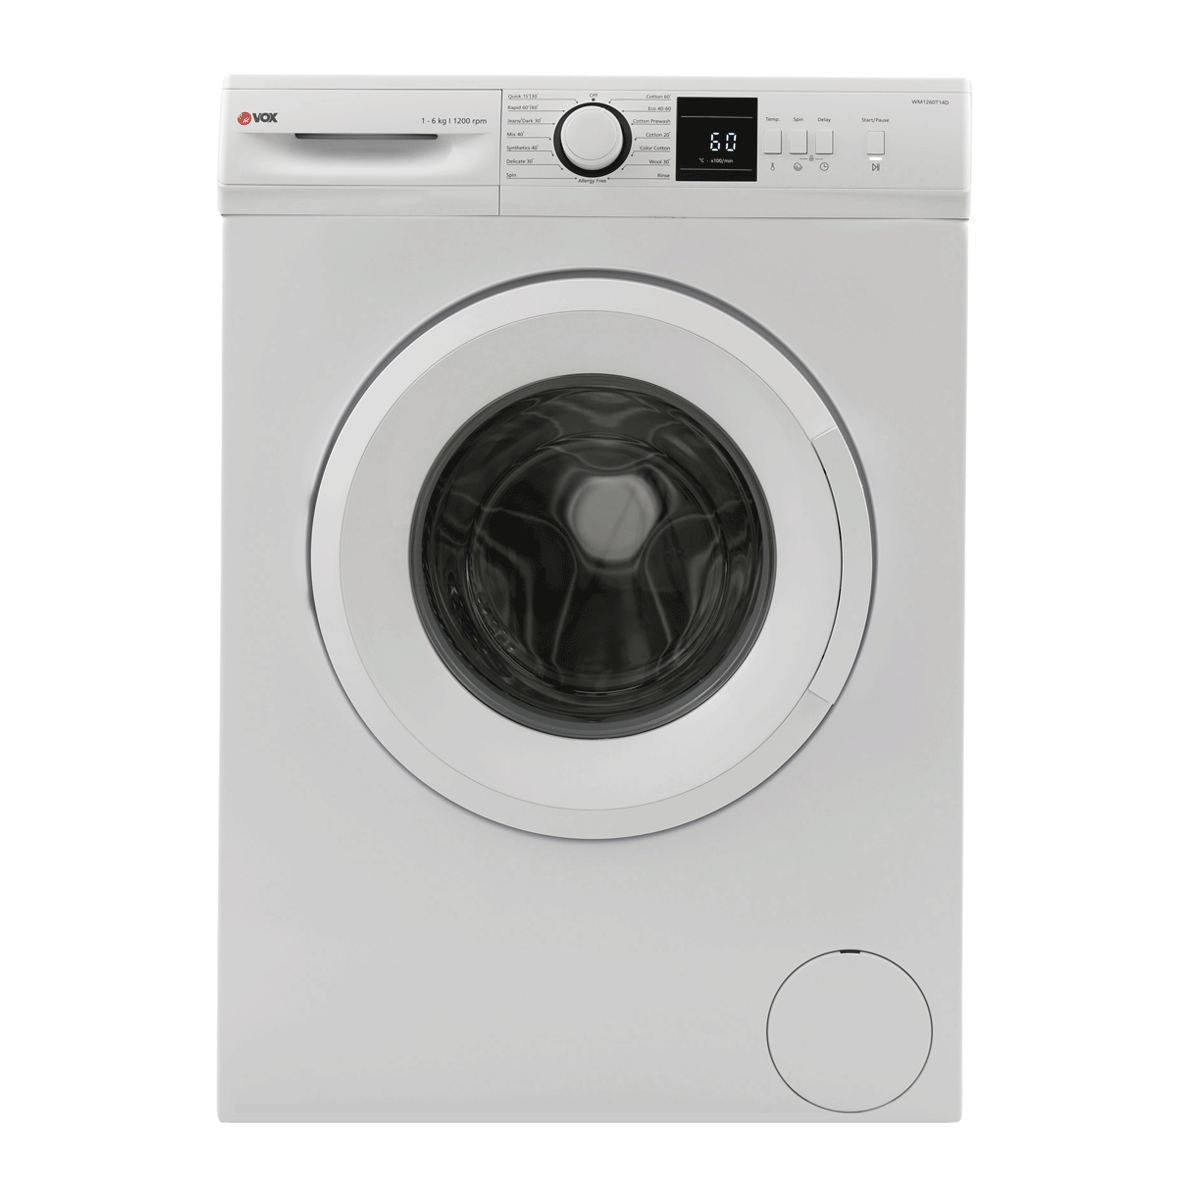 Washing machine WM1260-T14D 